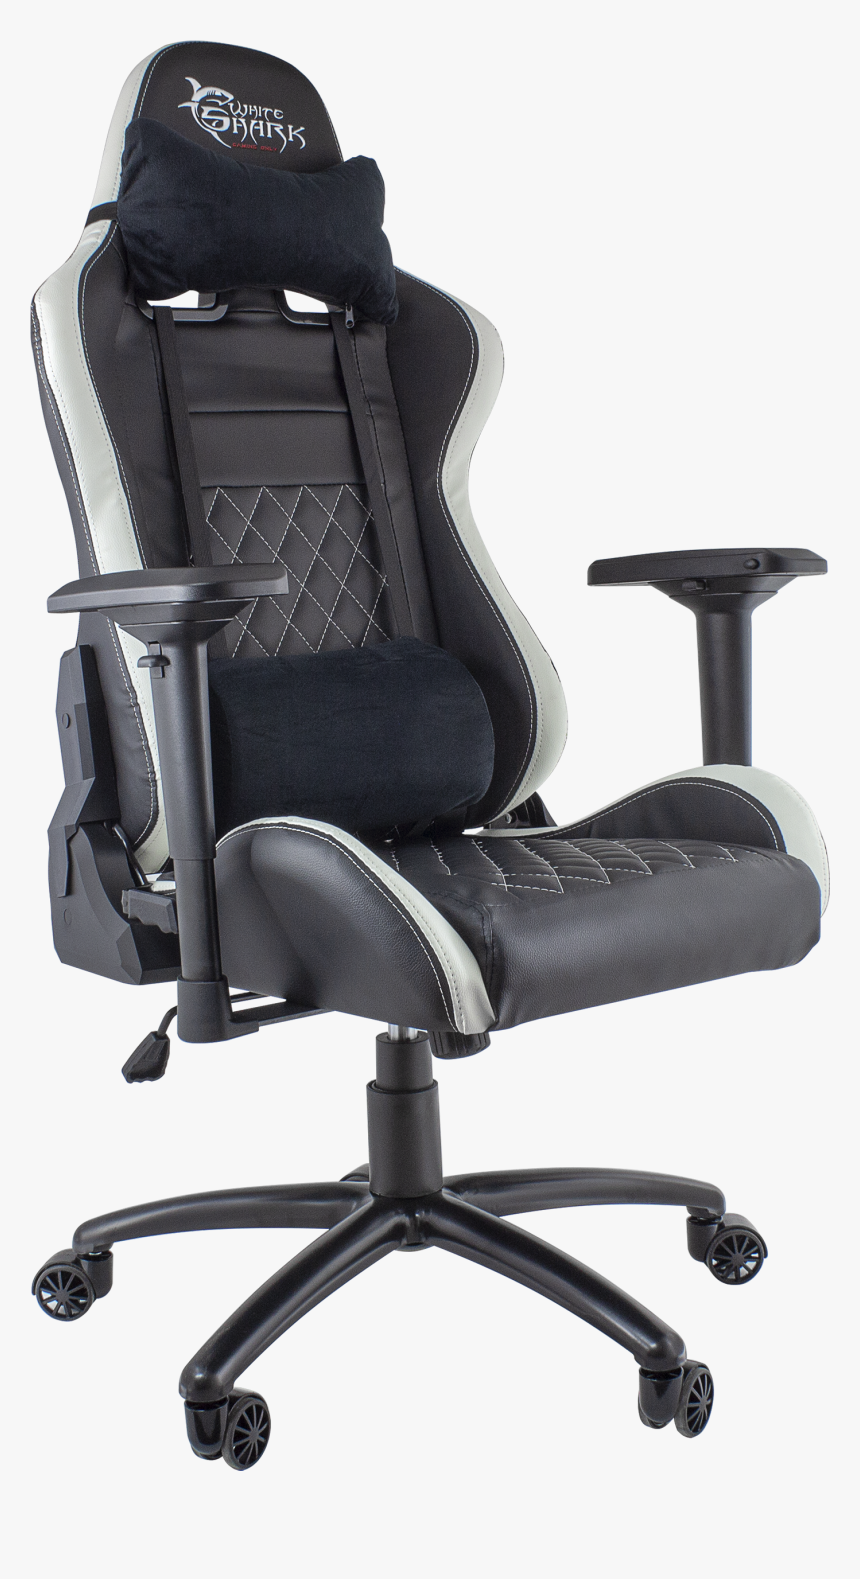 White Shark Gaming Chair Nitro Gt Black/white-1 - White Shark Chair Nitro Gt, HD Png Download, Free Download